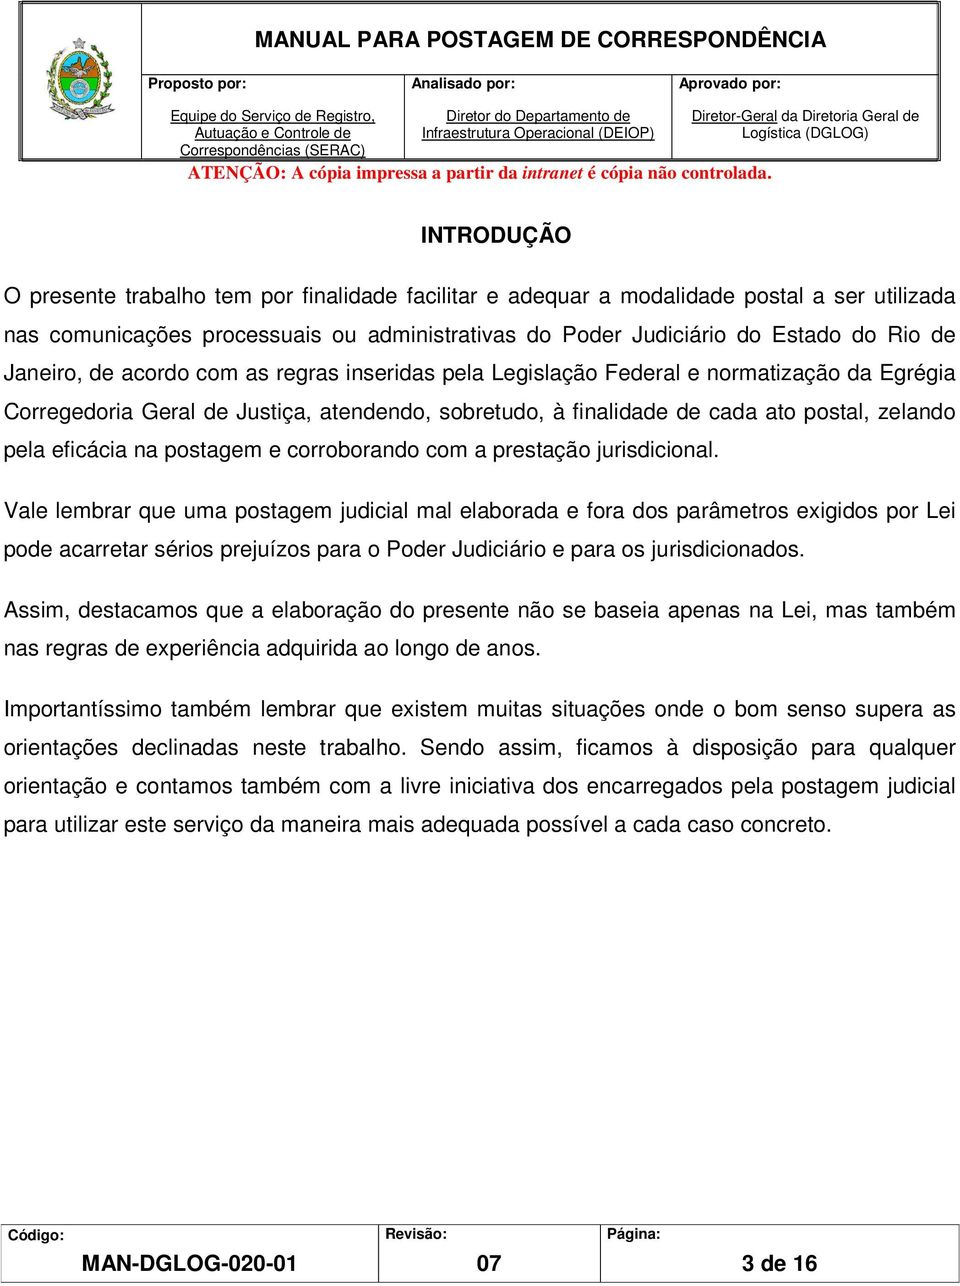 Poder Judiciário do Estado do Rio de Janeiro, de acordo com as regras inseridas pela Legislação Federal e normatização da Egrégia Corregedoria Geral de Justiça, atendendo, sobretudo, à finalidade de